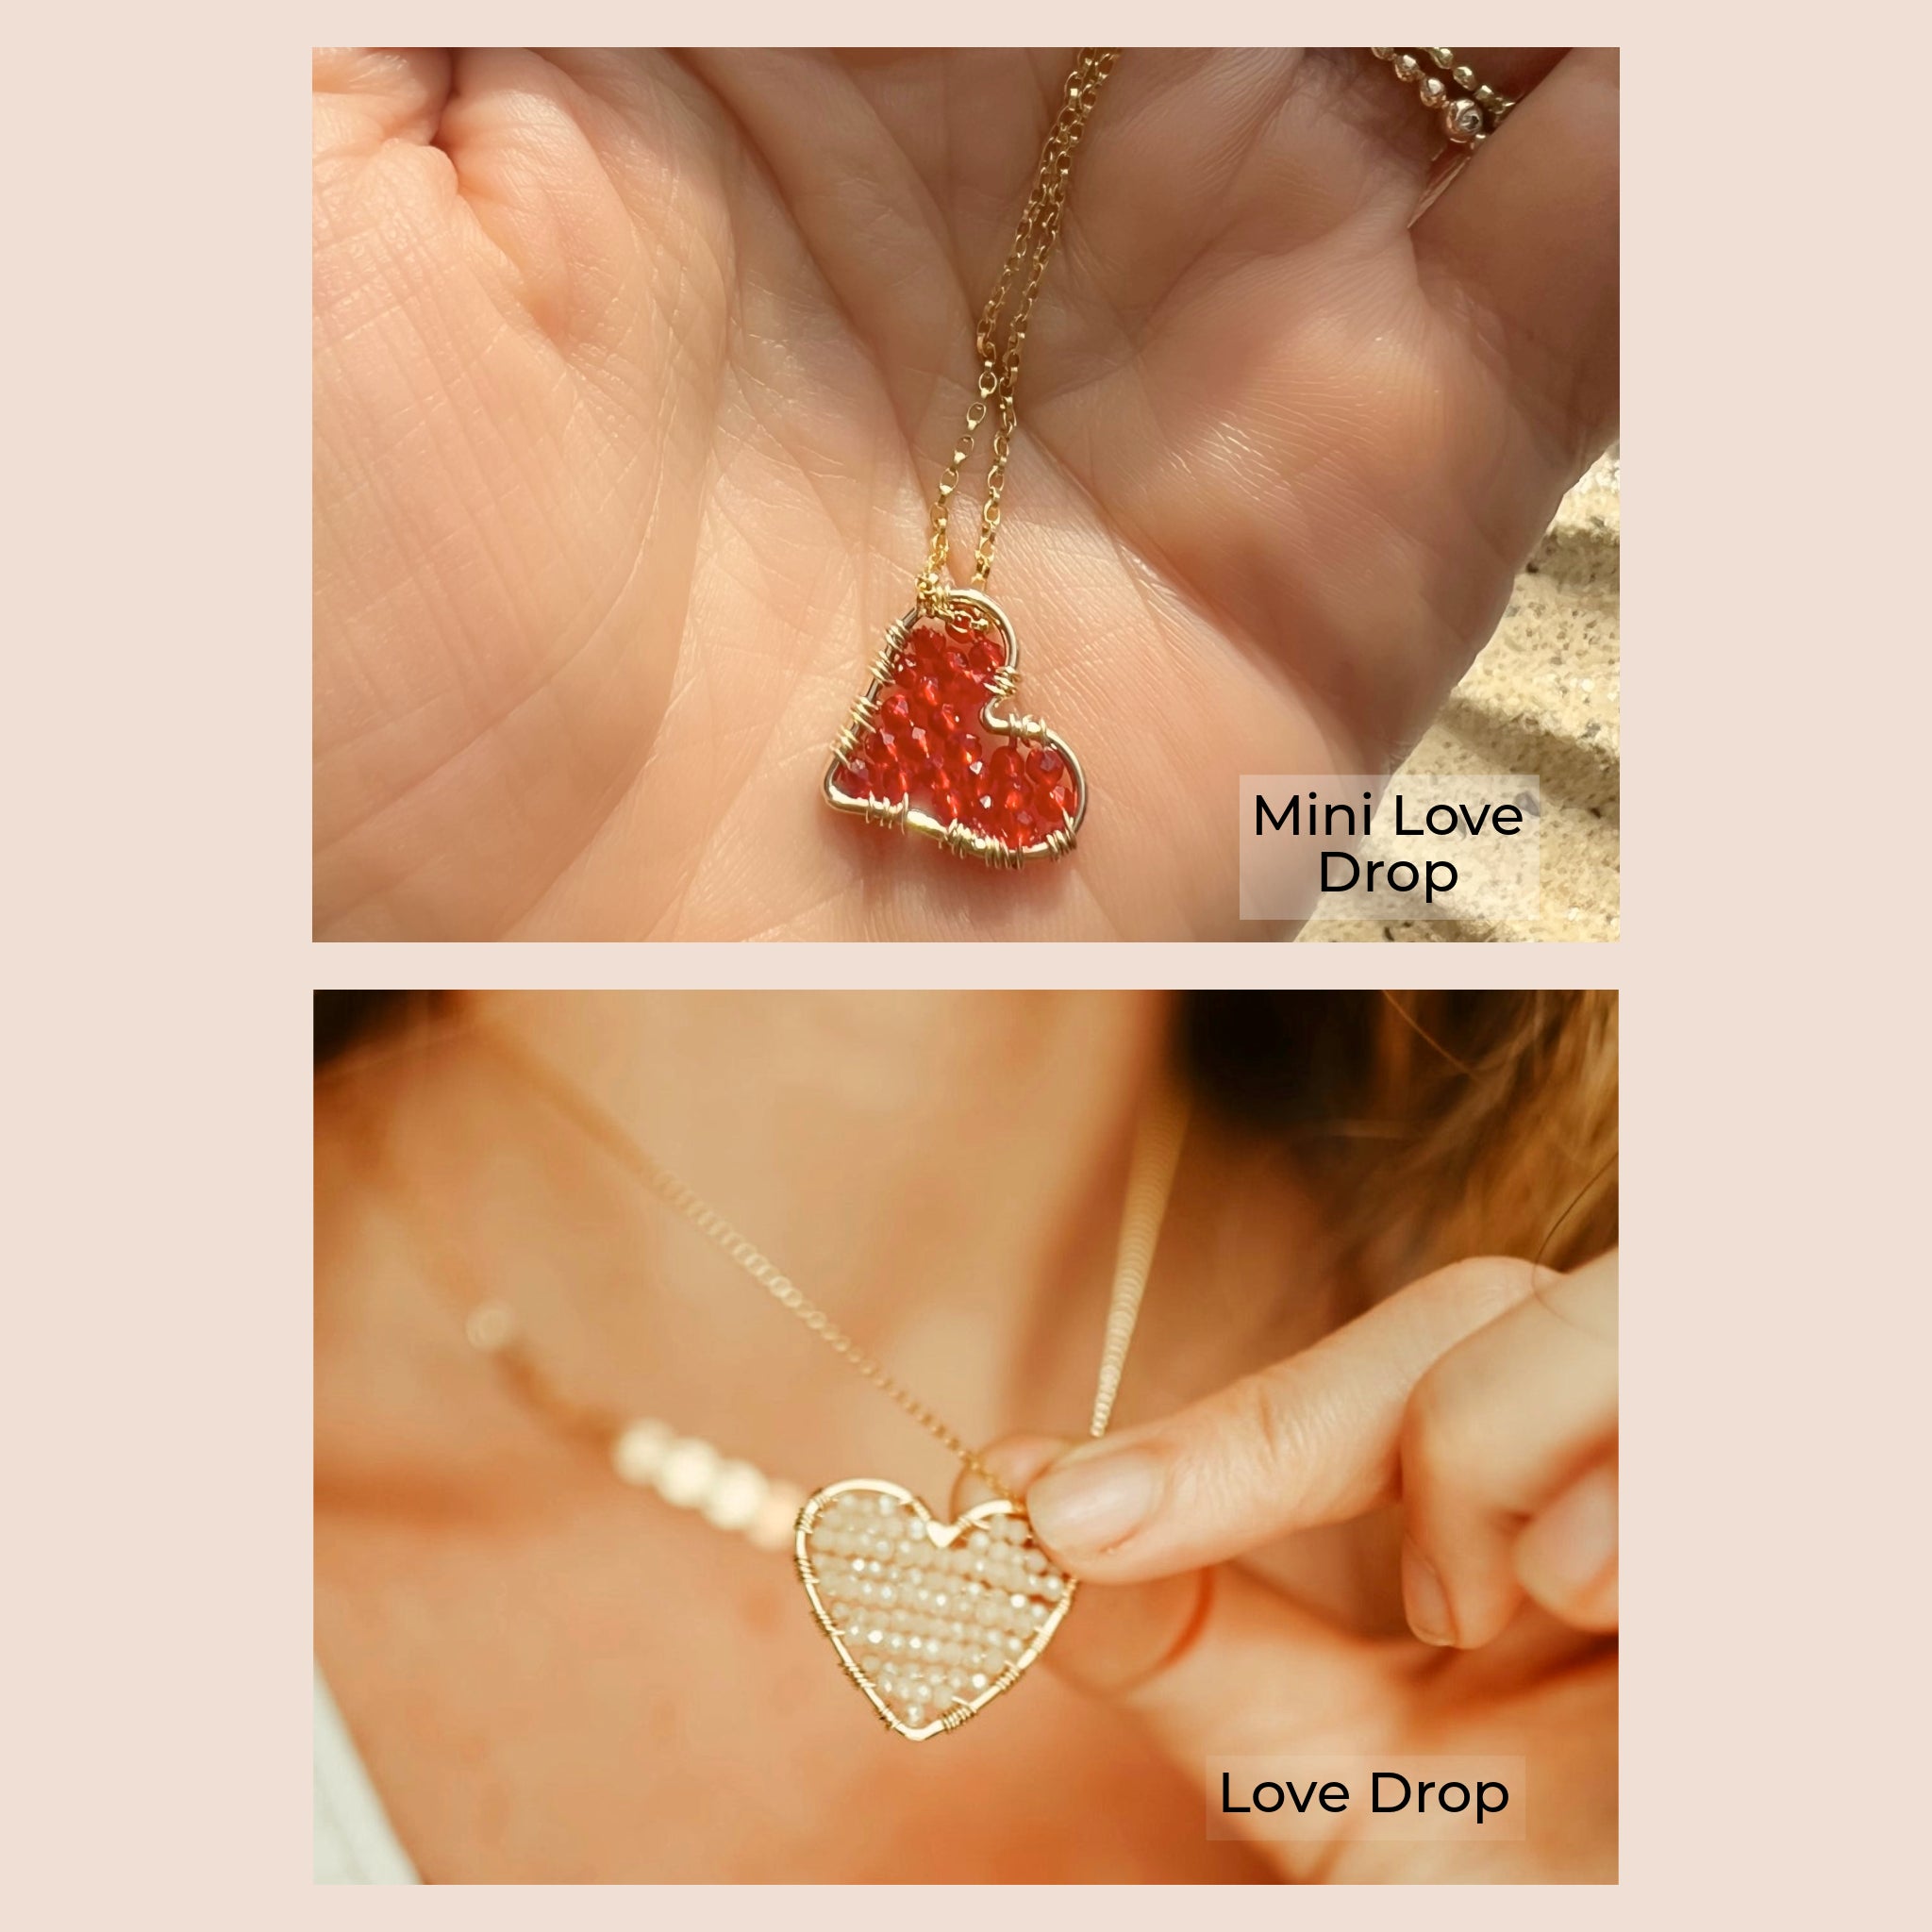 Love Drop Necklaces, size comparison